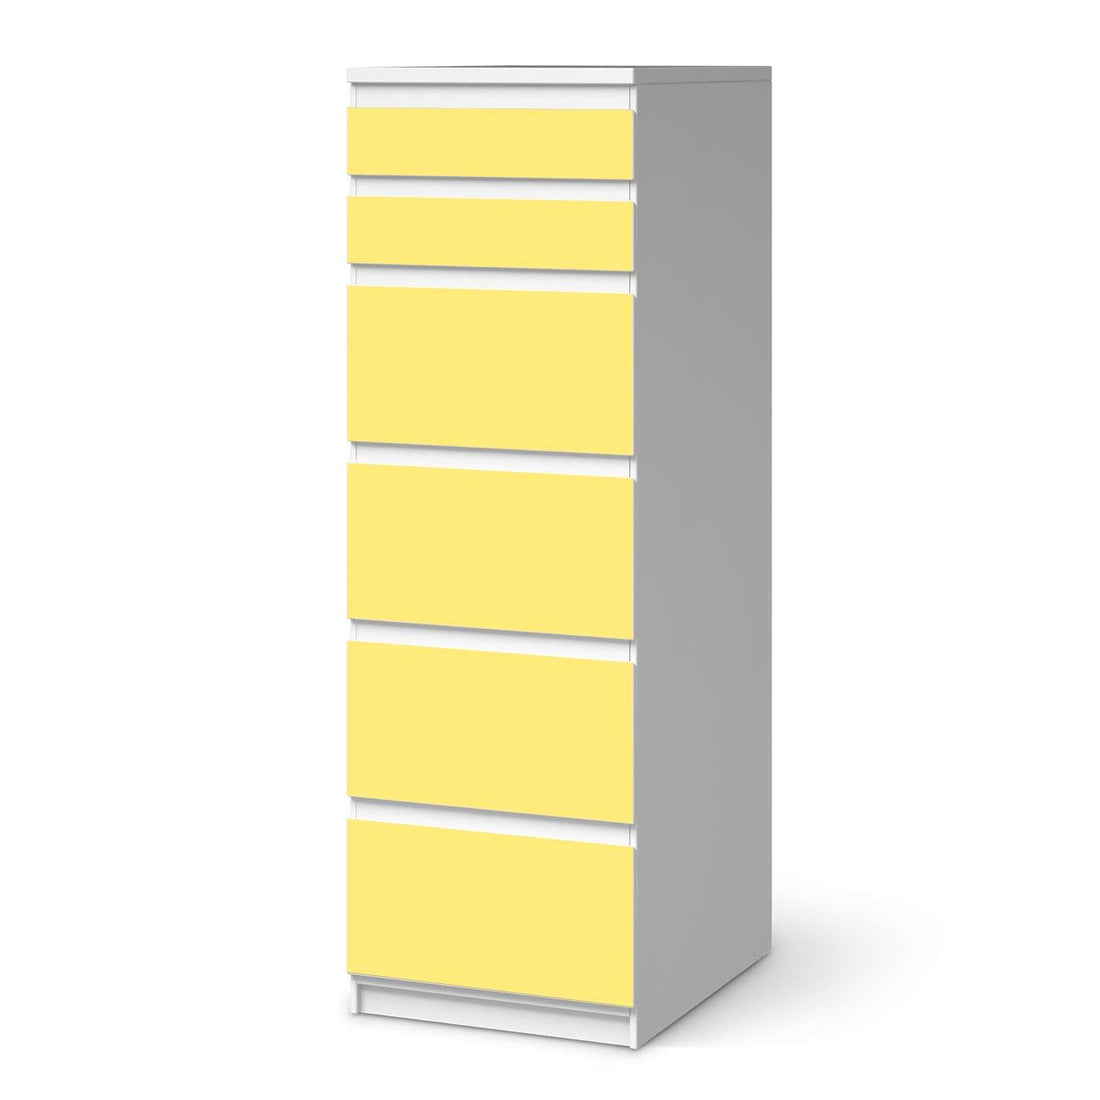 Klebefolie Gelb Light - IKEA Malm Kommode 6 Schubladen (schmal)  - weiss